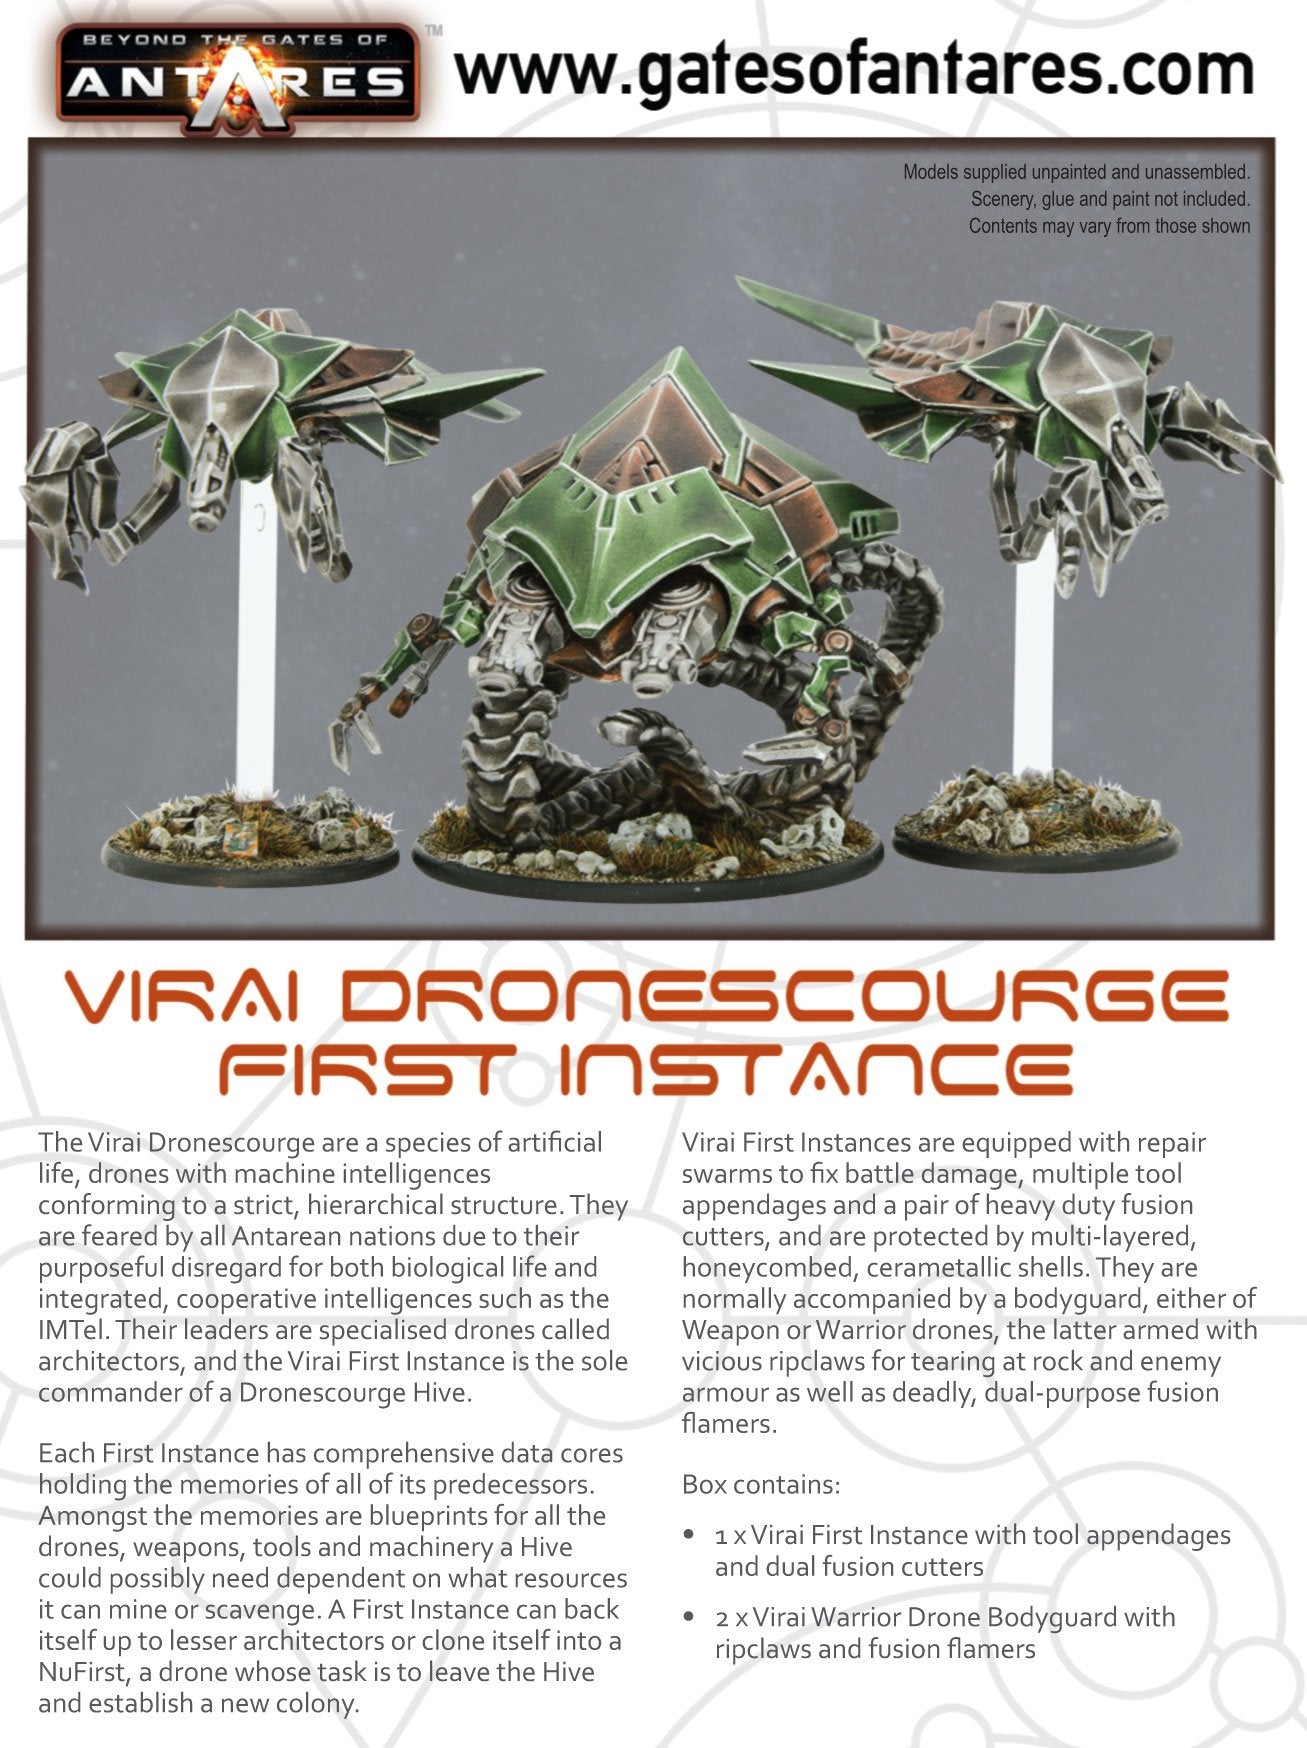 Virai Dronescourge - First Instance